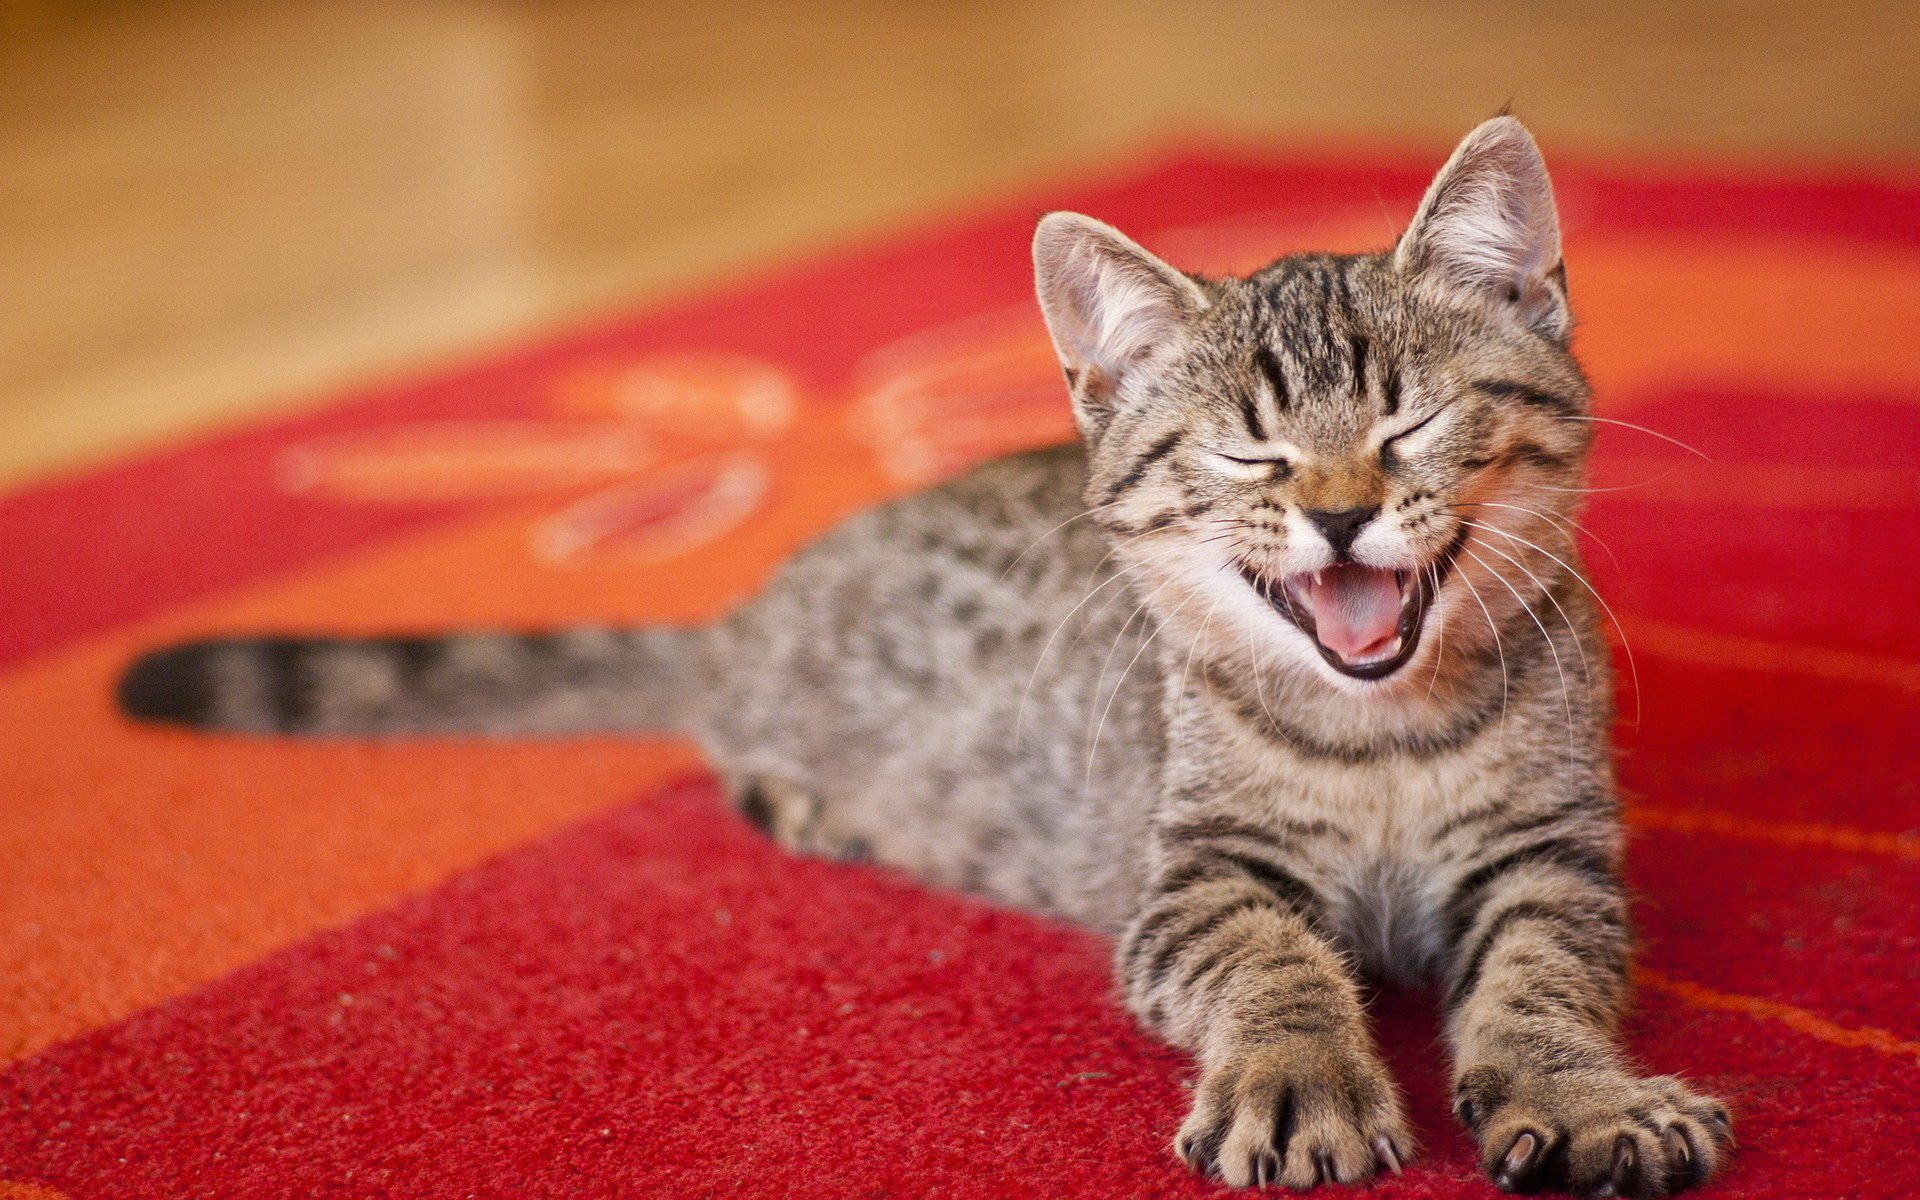 Tabby Cat Yawning